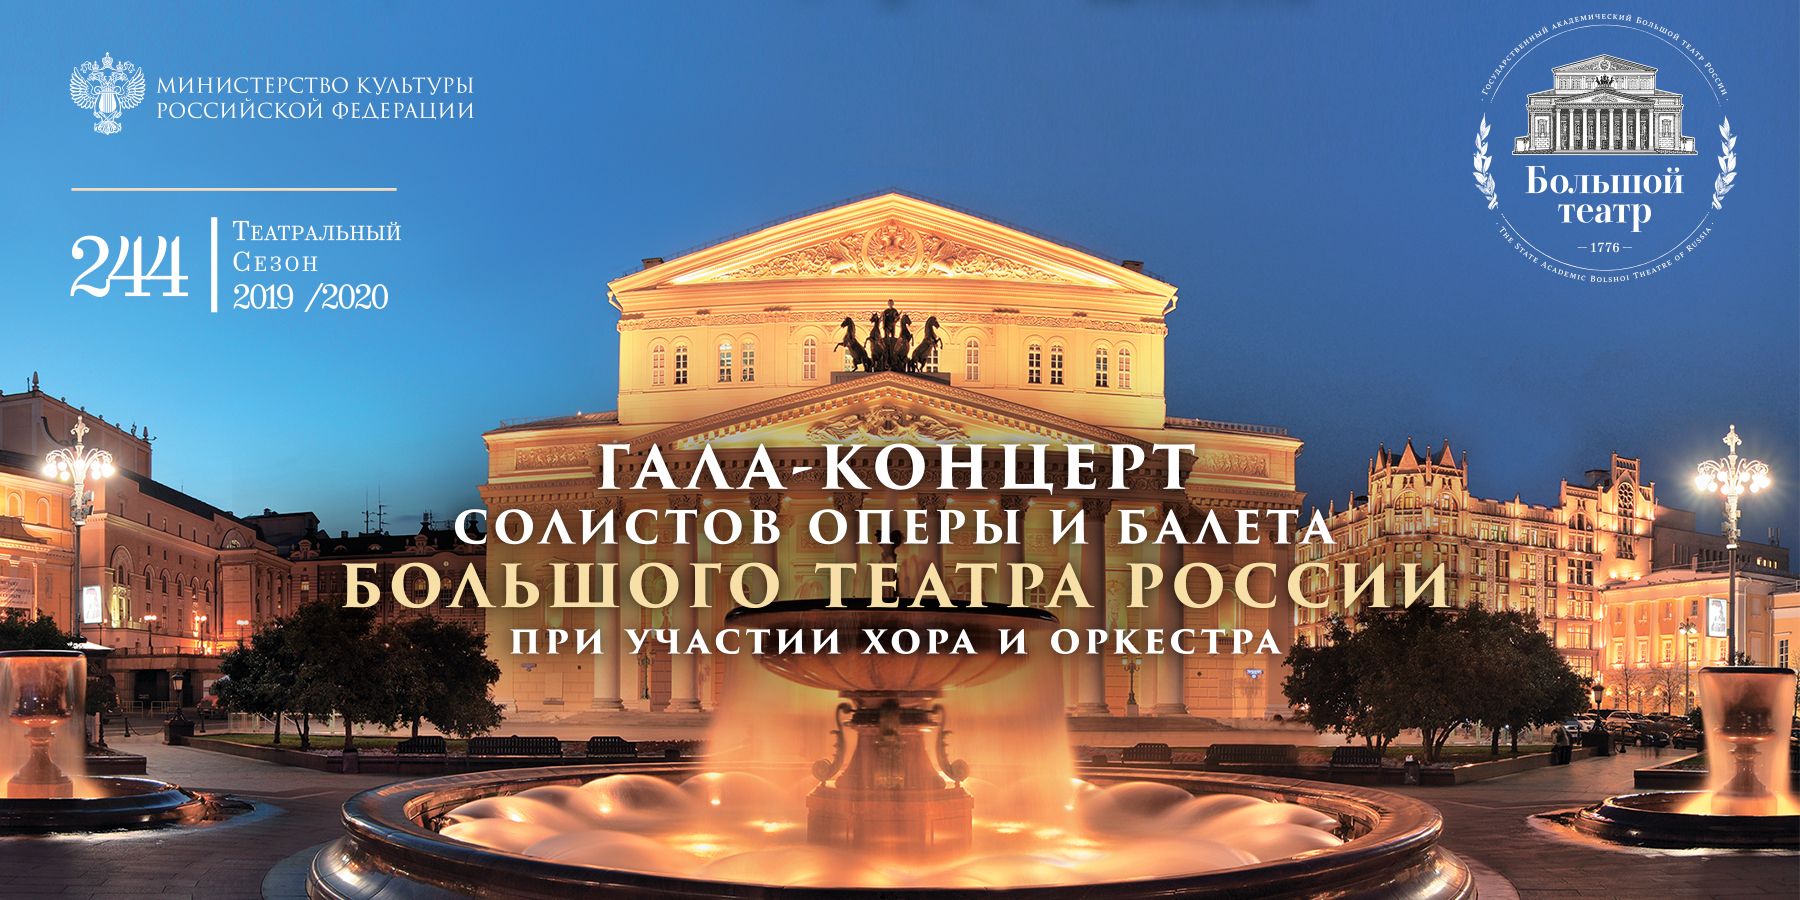 Гала-концерт солистов оперы и балета Большого Театра